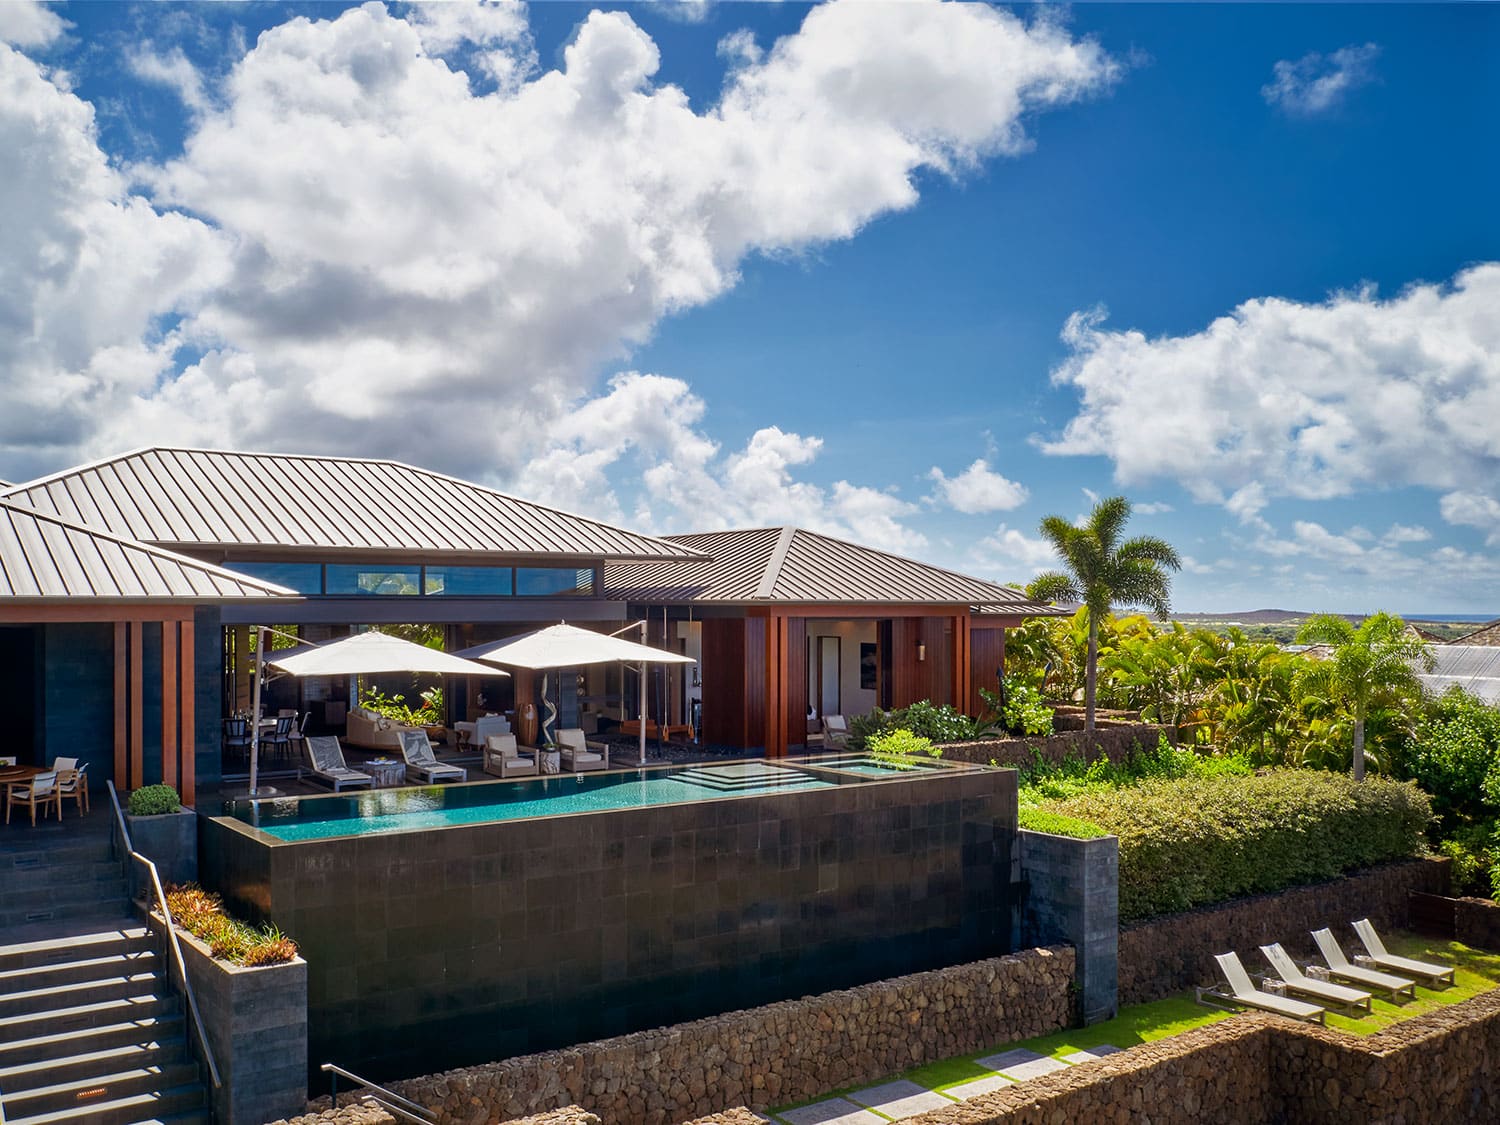 The exterior pool of a Kauai home.